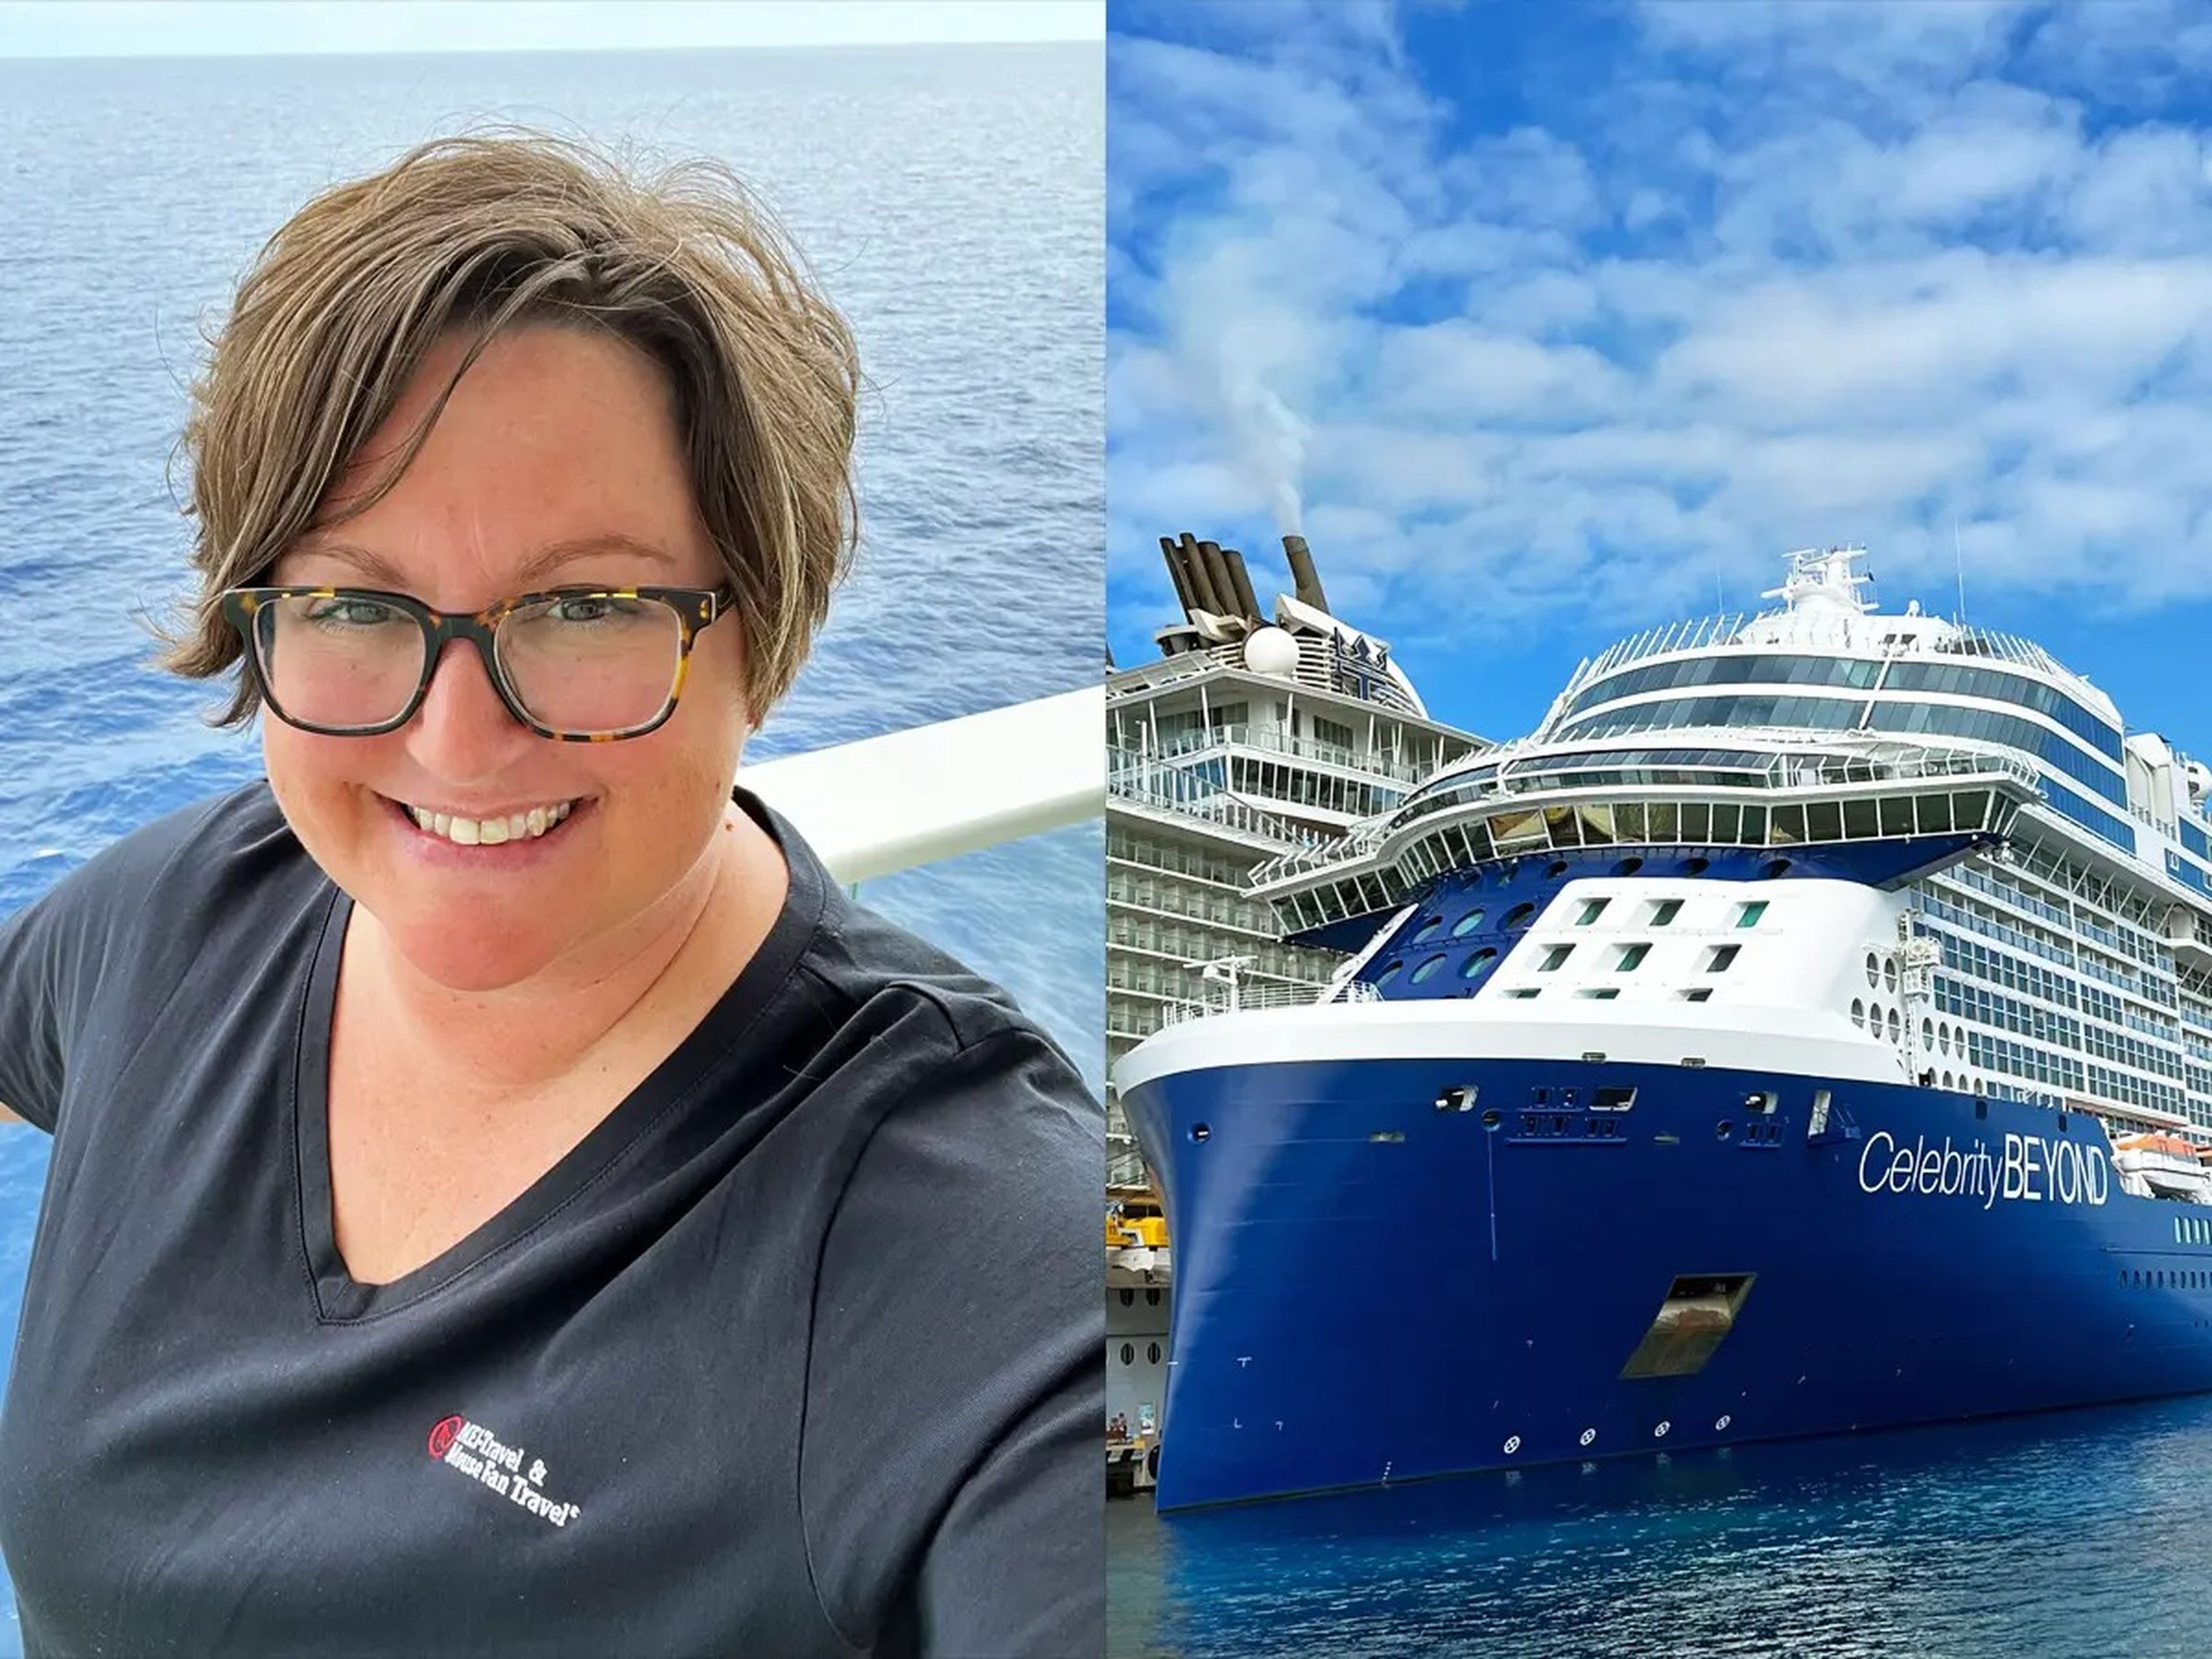 Author posing on cruise, cruise ship